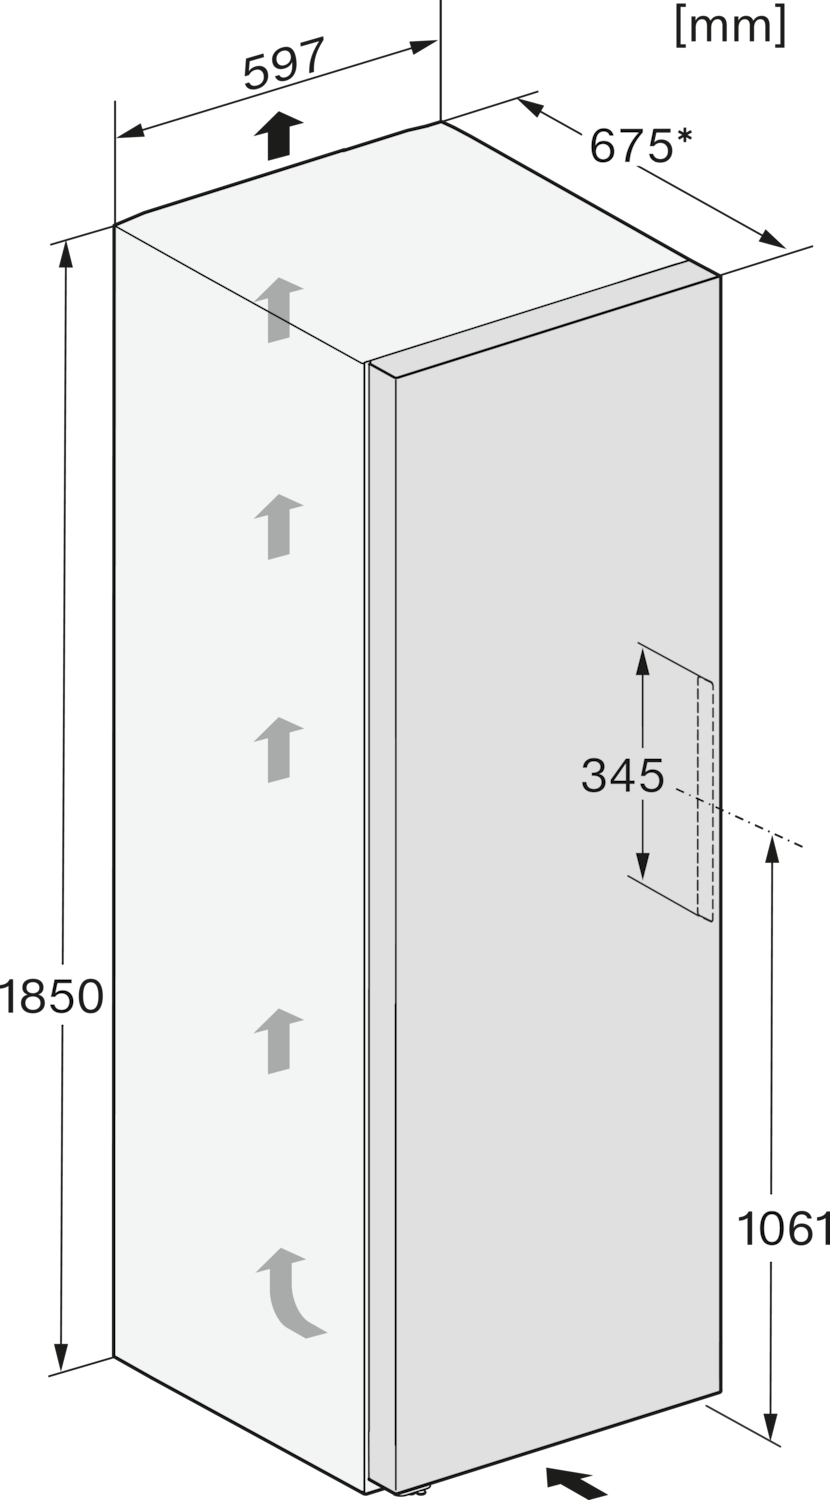 Šaldiklis su NoFrost ir Side Open funkcijomis, aukštis 1.85m (FNS 4382 E) product photo View31 ZOOM